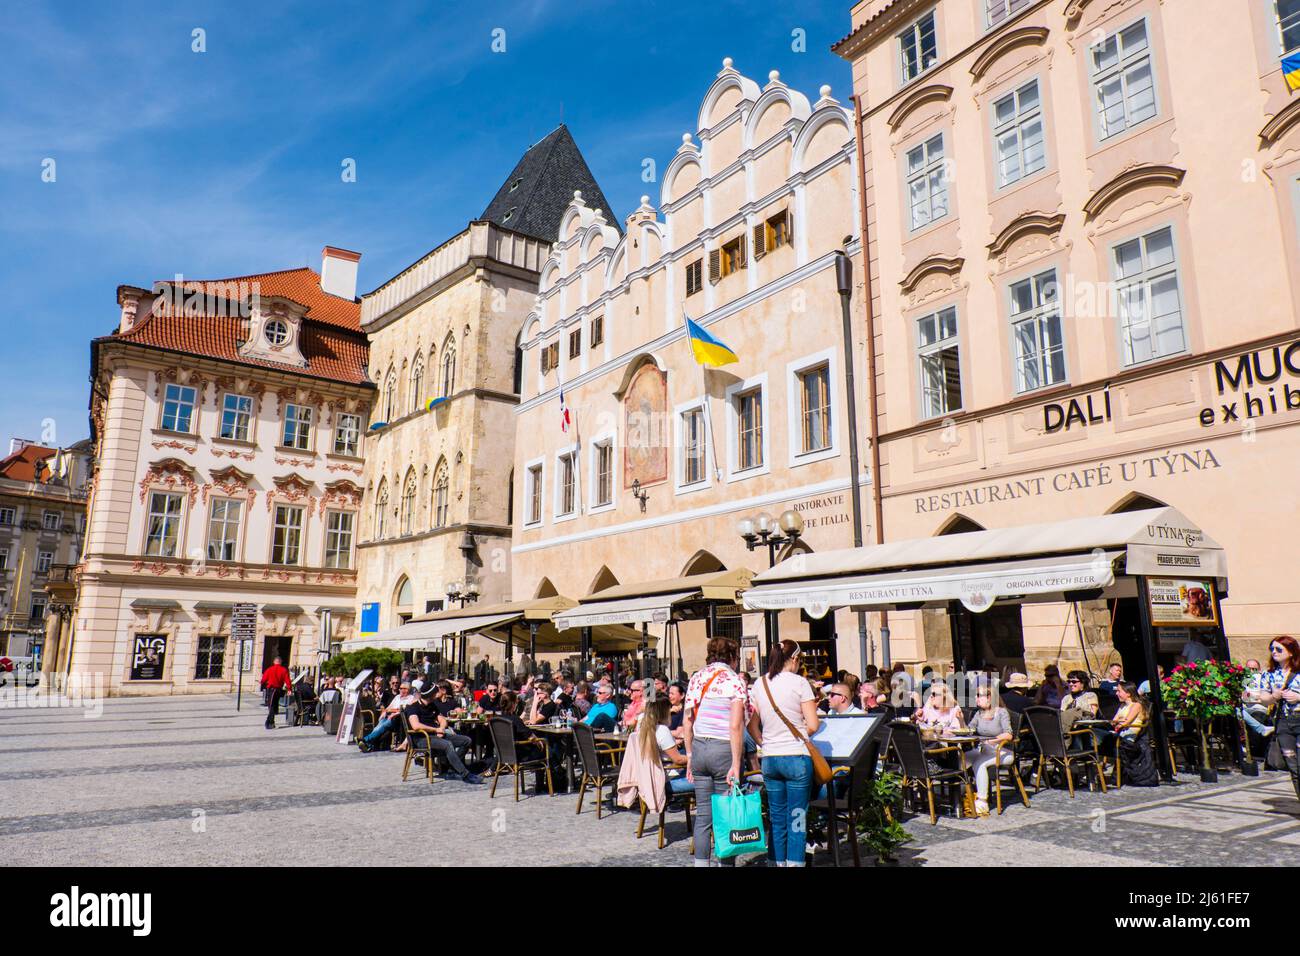 Terrazze ristorante, di fronte alla chiesa di Tyn, Staroměstské náměstí, piazza della città vecchia, Praga, Repubblica Ceca Foto Stock